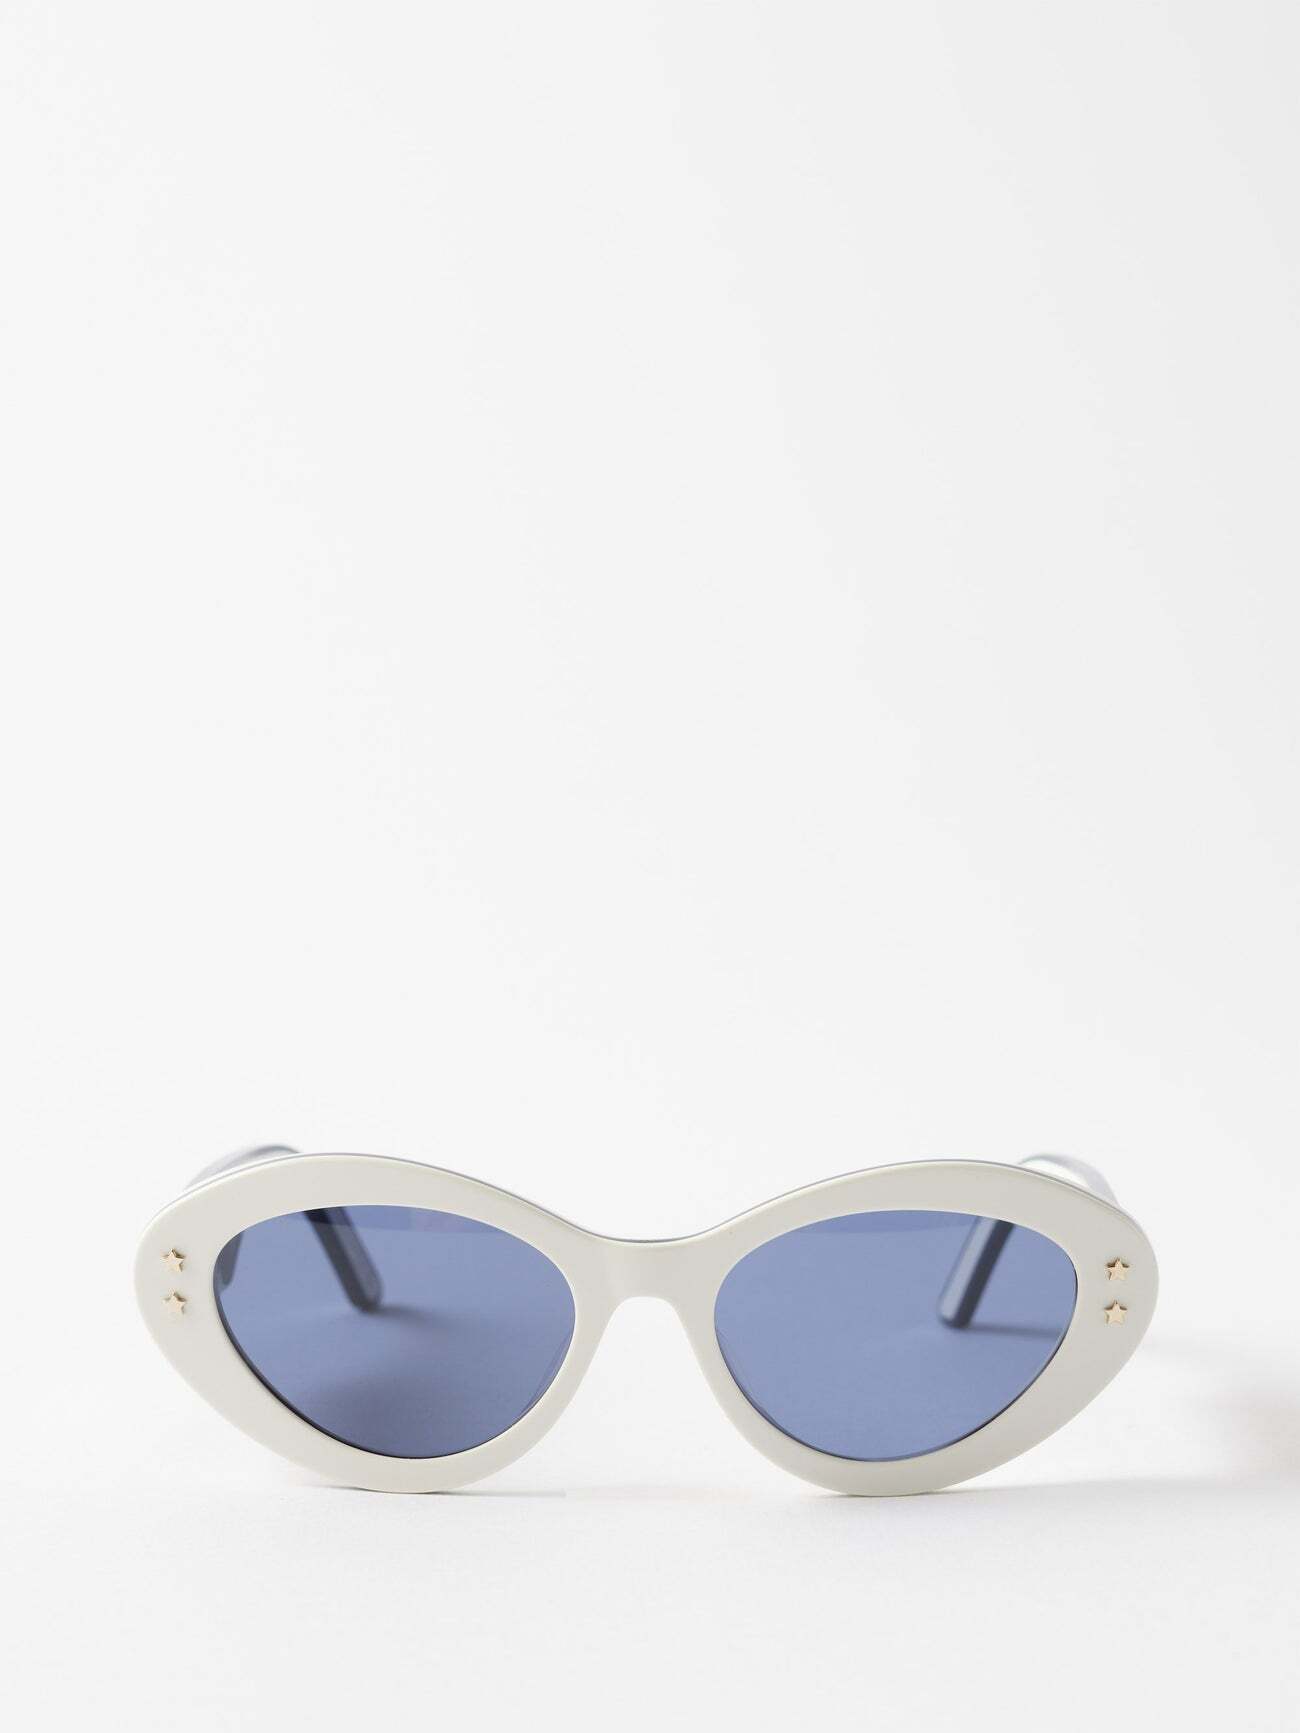 Dior - Diorpacific B1u Cat-eye Acetate Sunglasses - Womens - White Blue